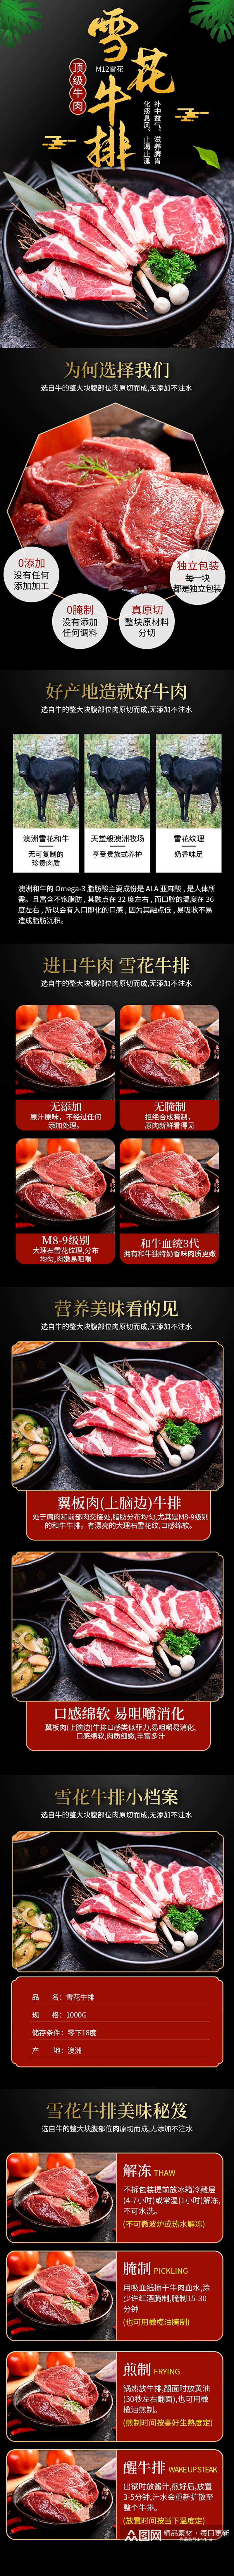 中国风雪花牛排牛肉详情页素材